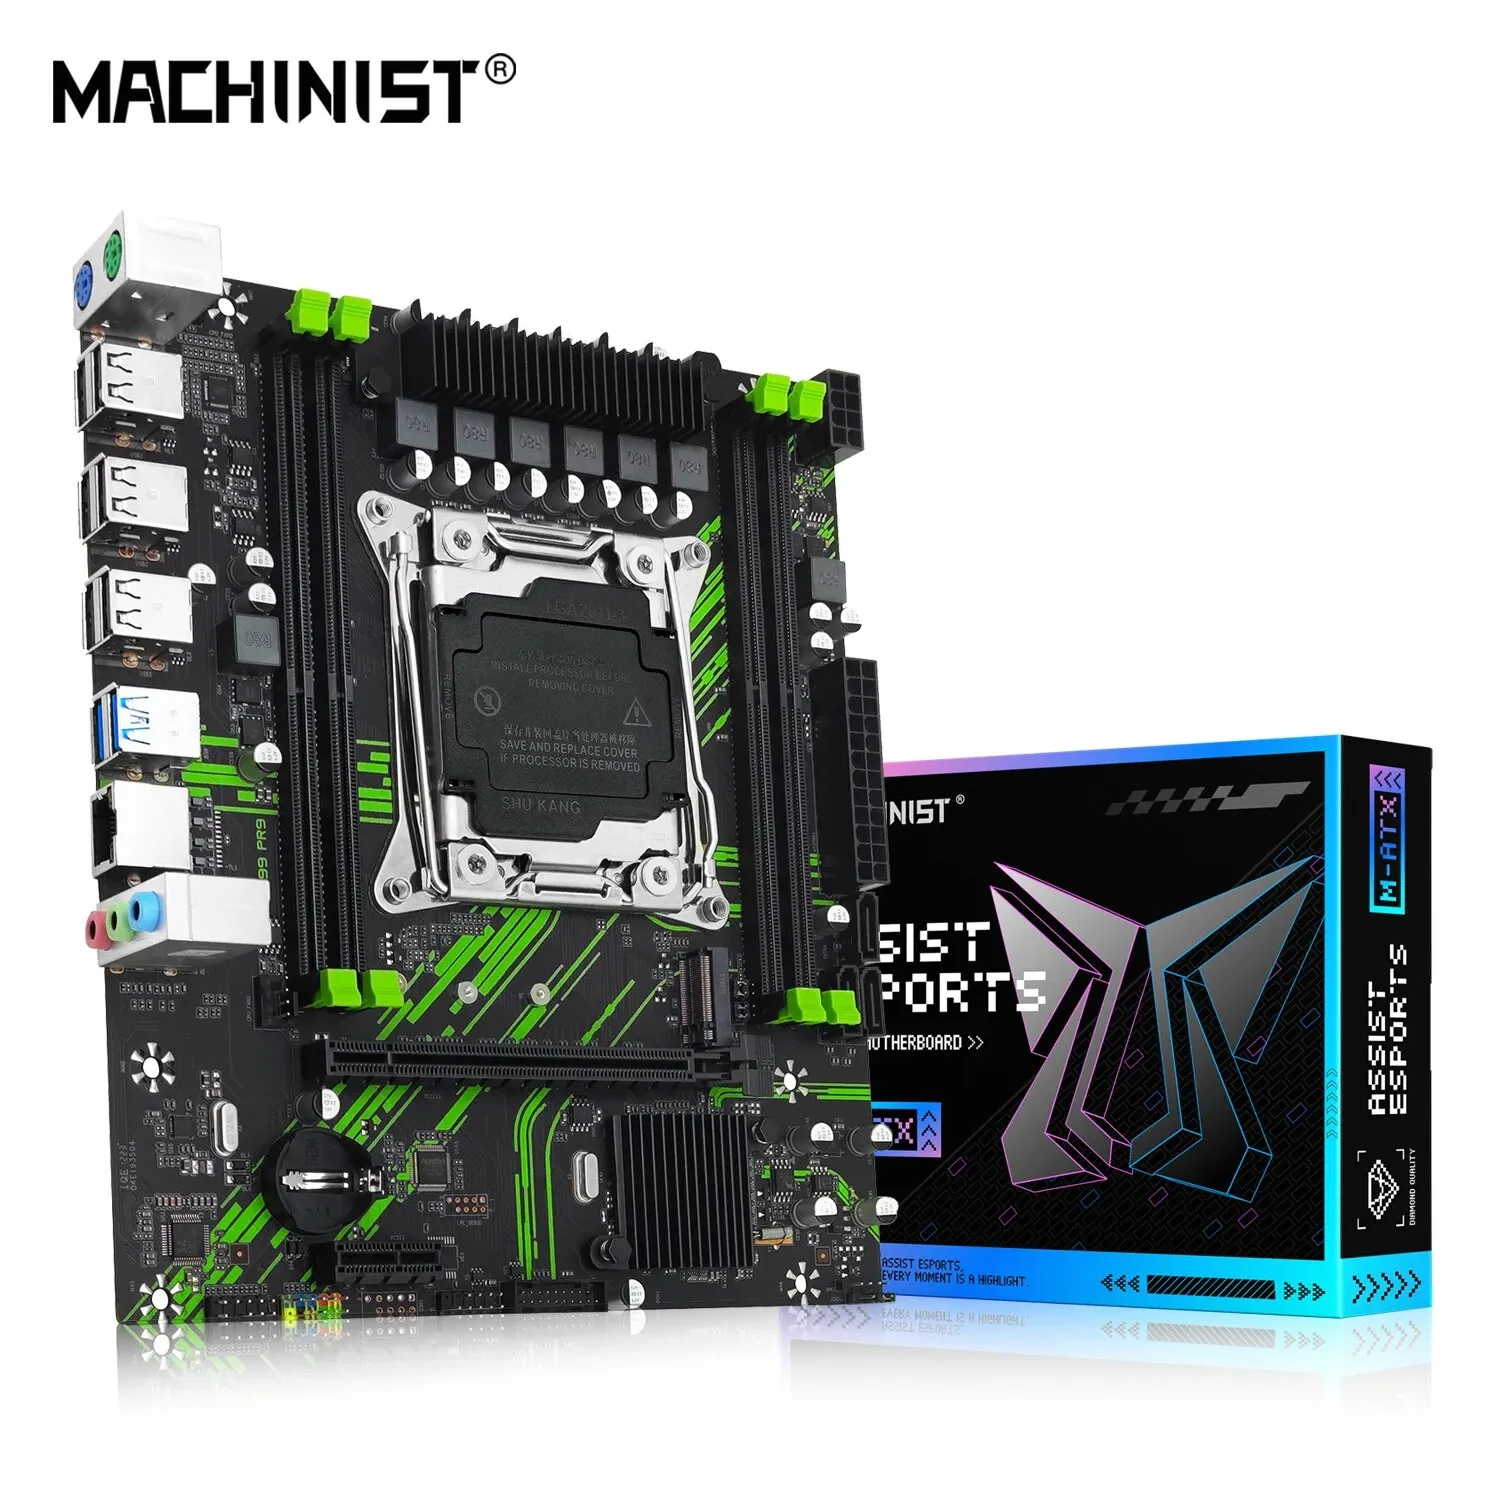 [Taxa Inclusa] Machinist X99 Placa Me Pr9, Suporte Lga 2011 3, Cpu Intel Xeon E5, V3 E V4